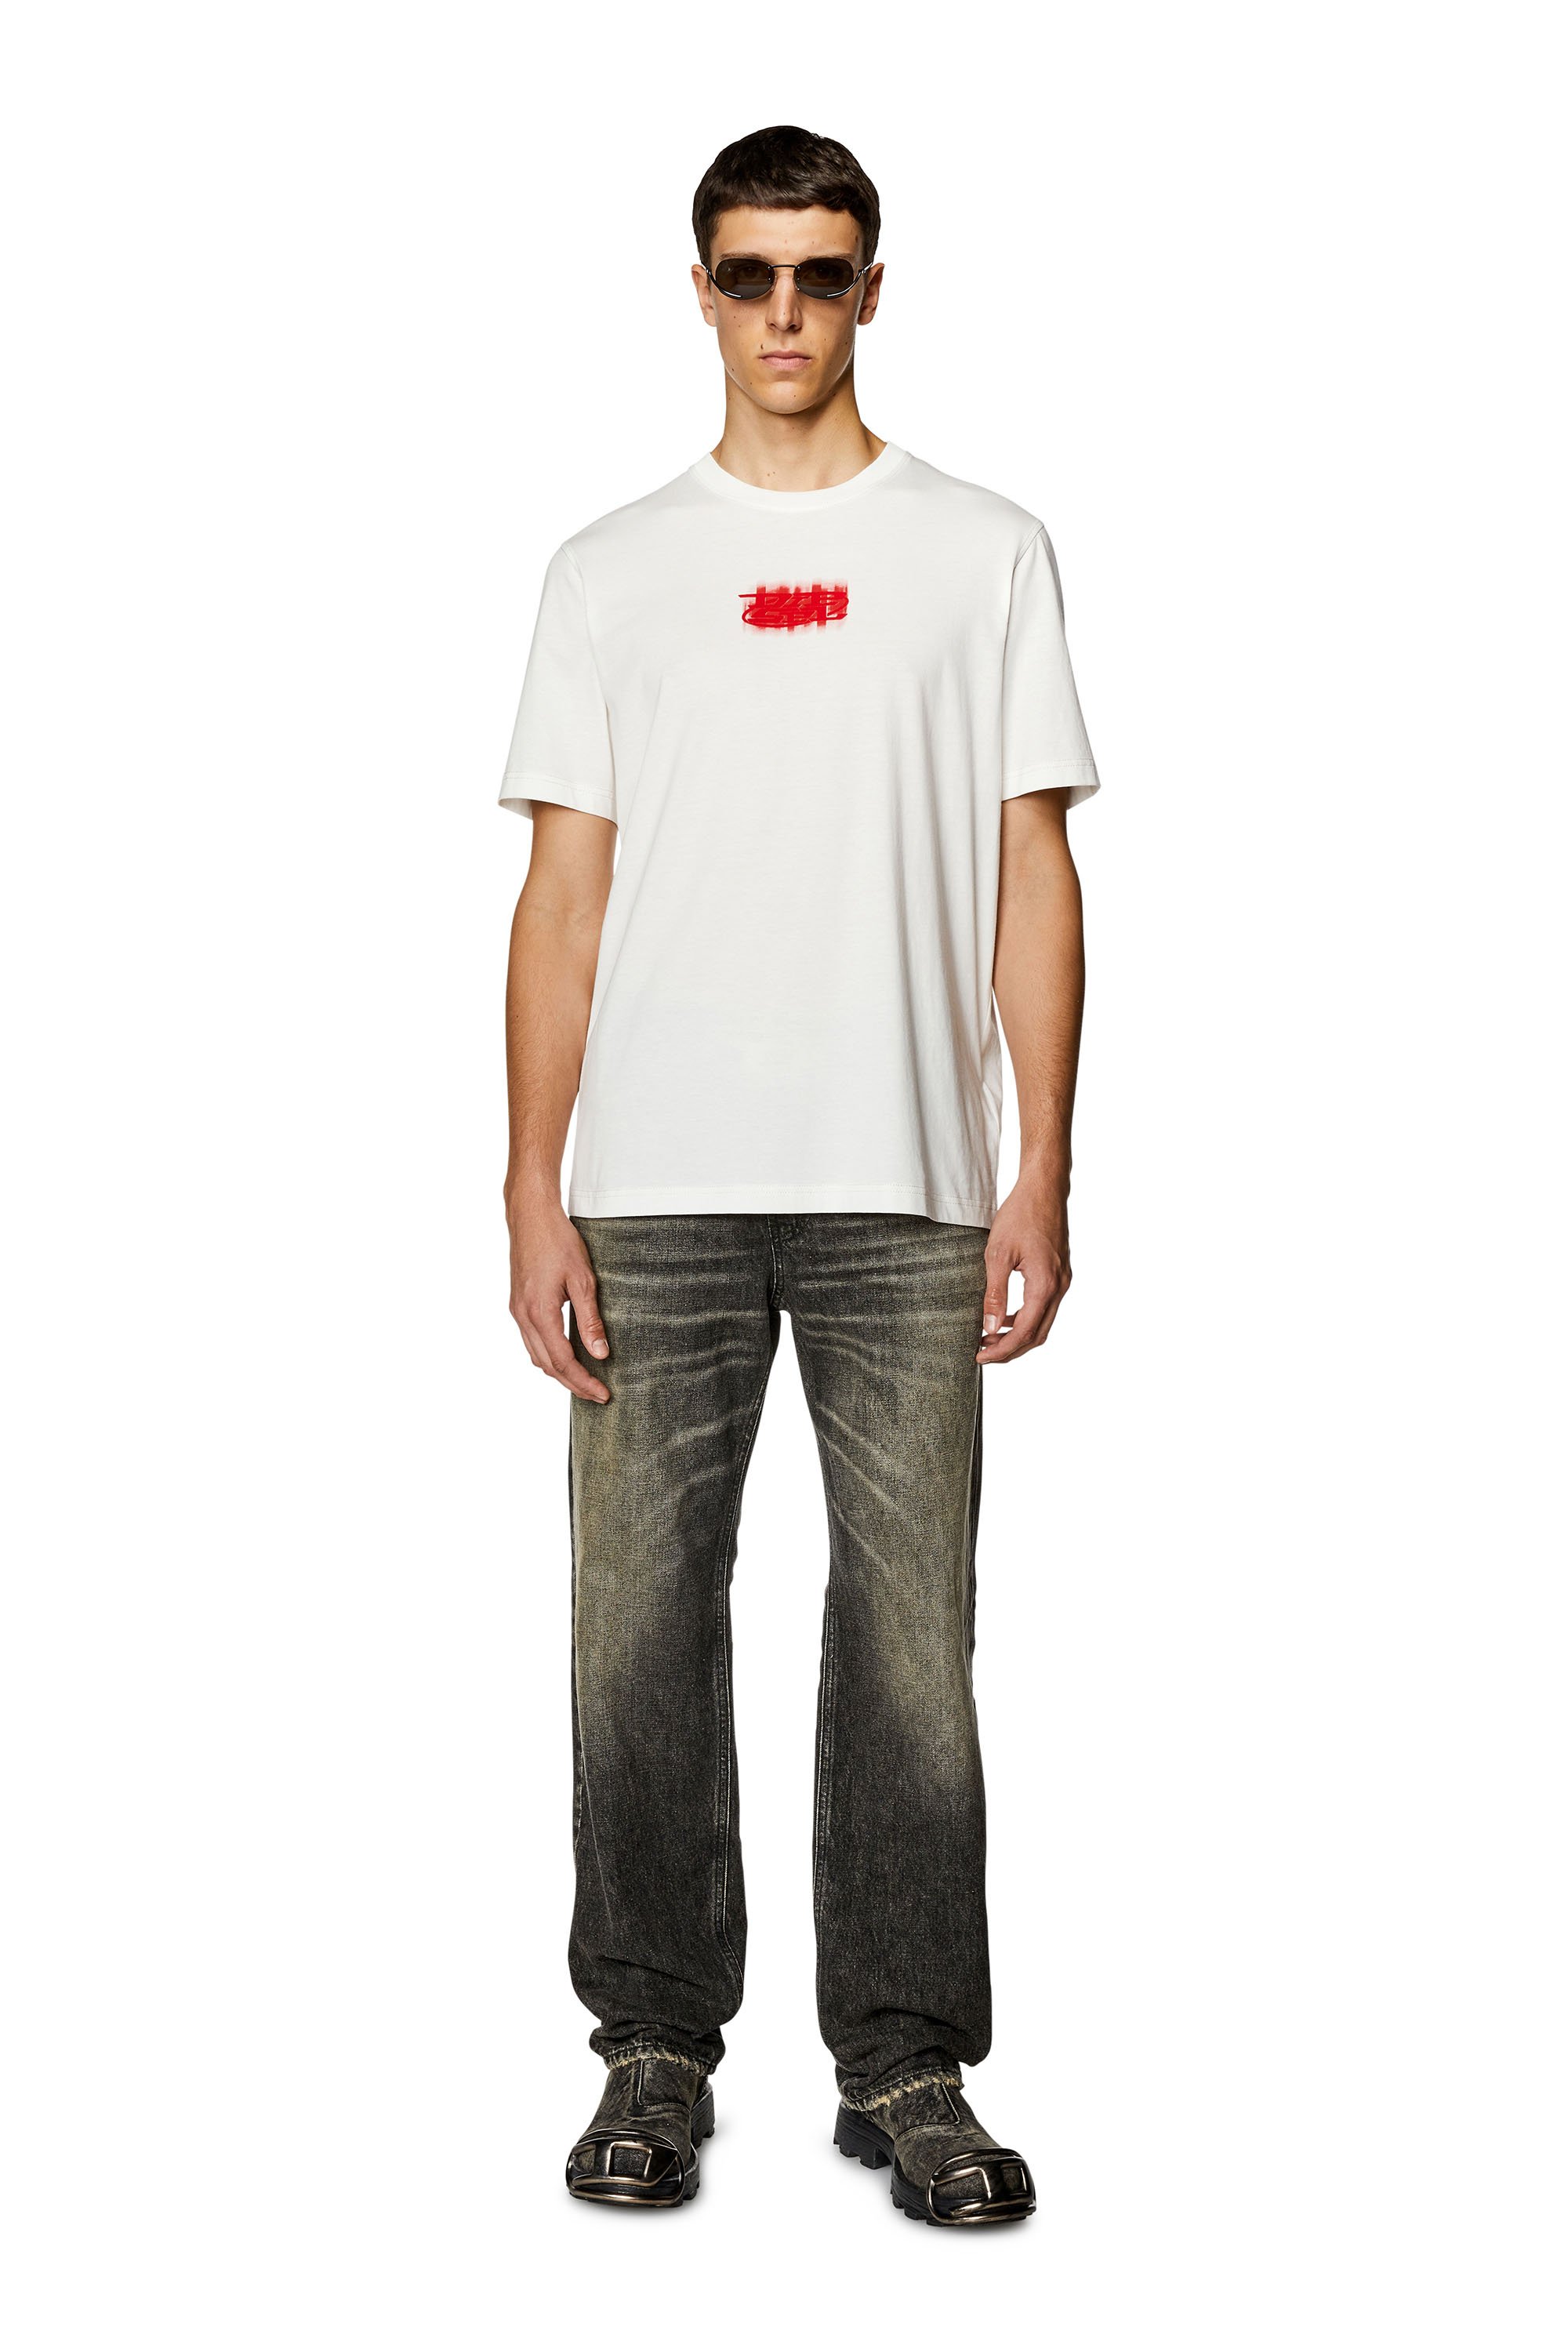 Diesel - T-JUST-N4, Hombre Camiseta de algodón orgánico con logotipo en relieve in Blanco - Image 2